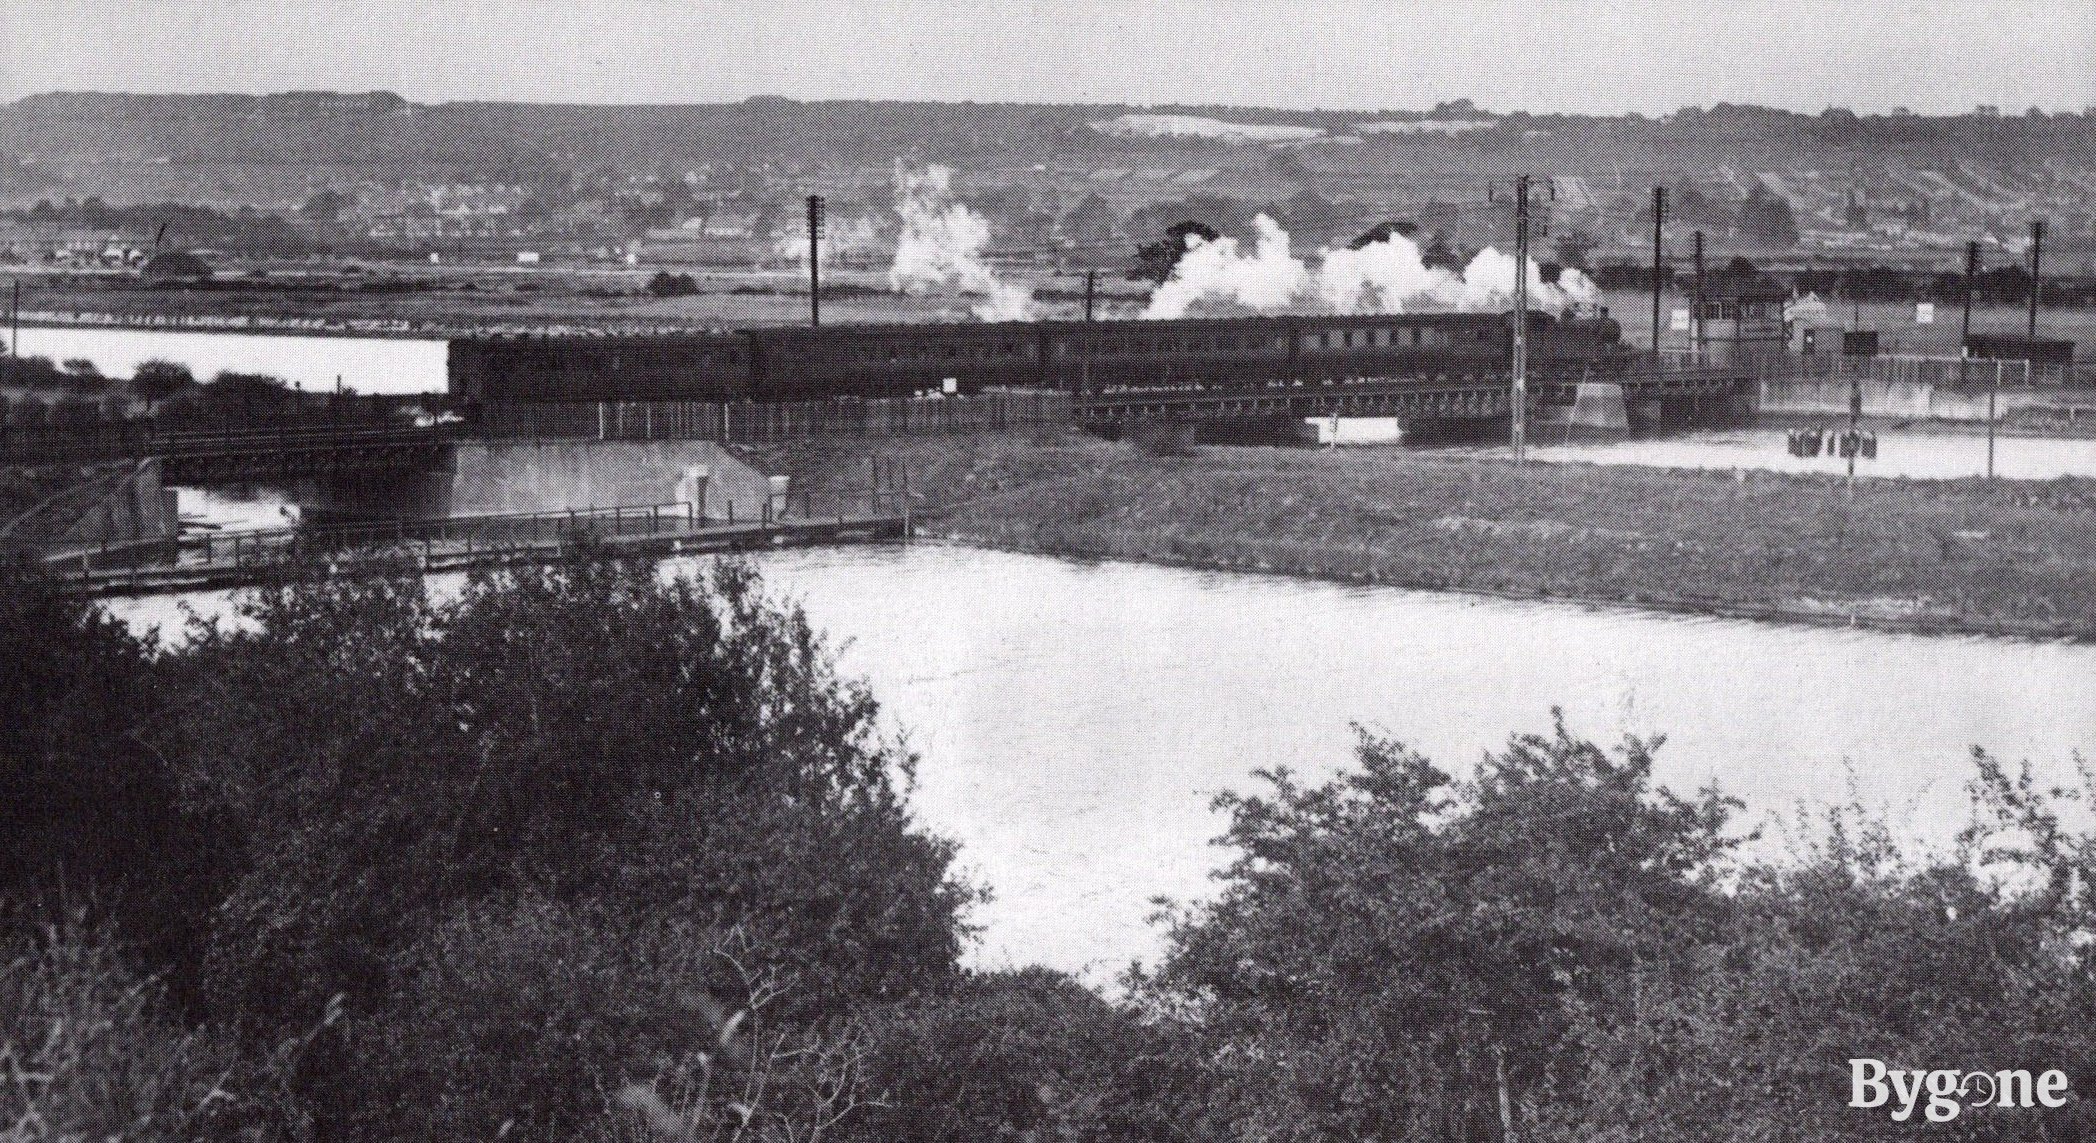 Portsbridge railway, 1936